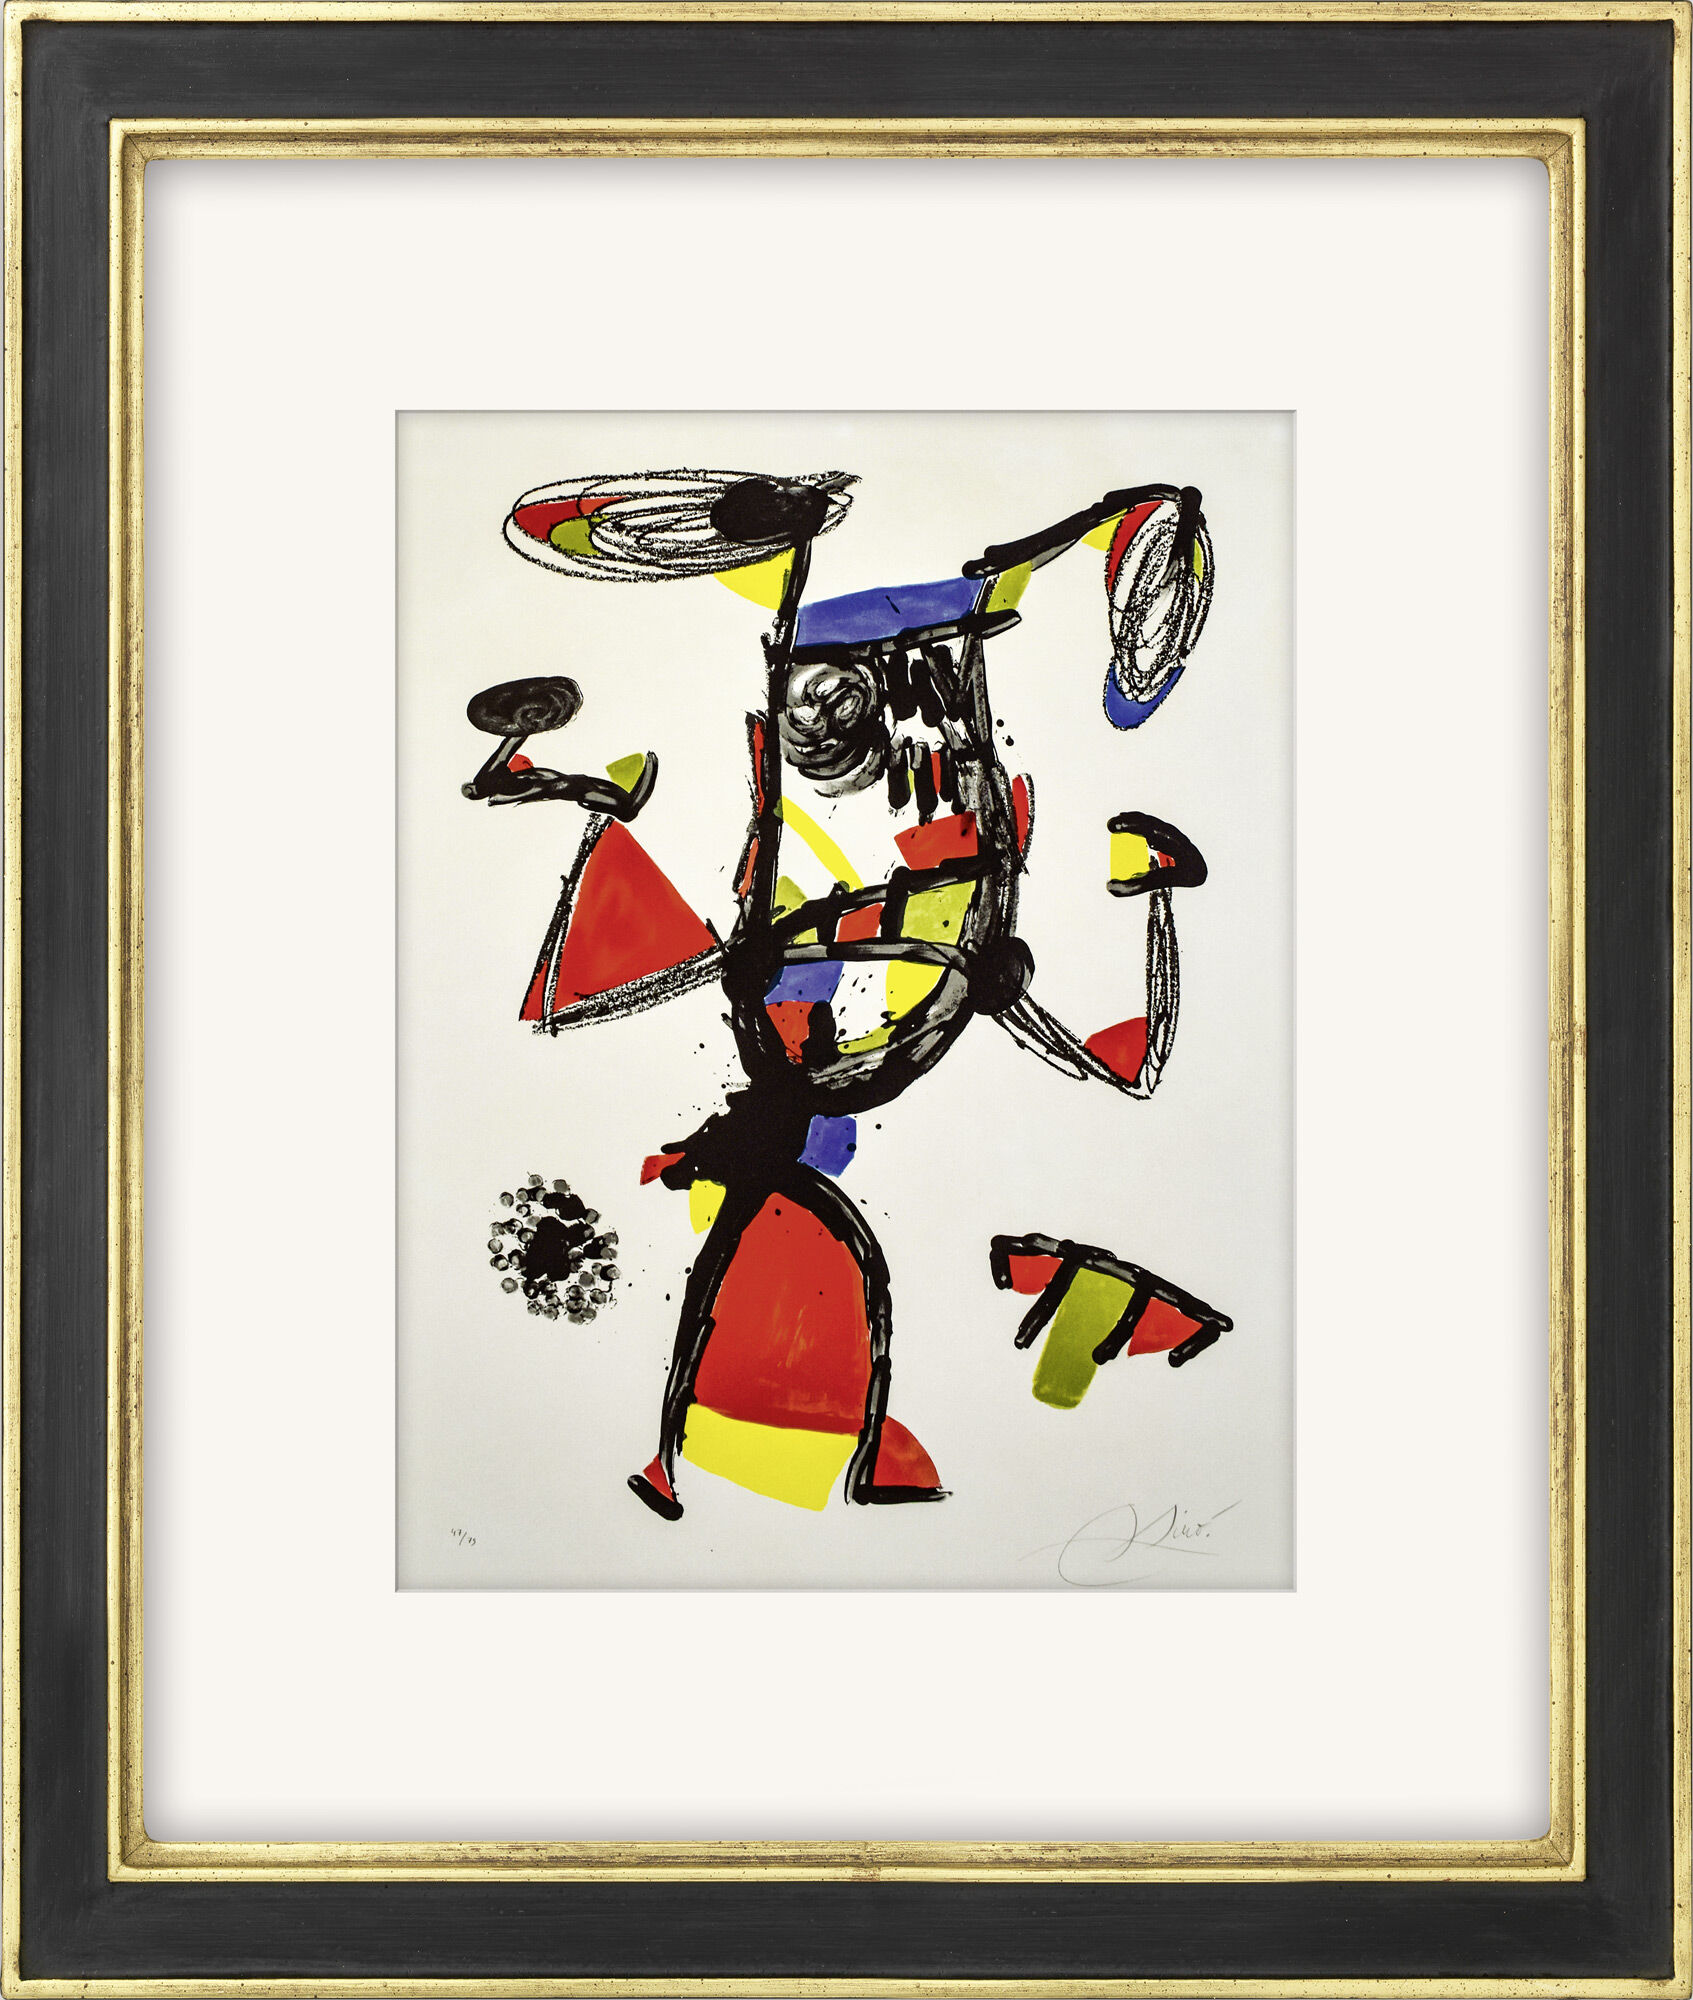 Tableau "Majorette" (1978) von Joan Miró